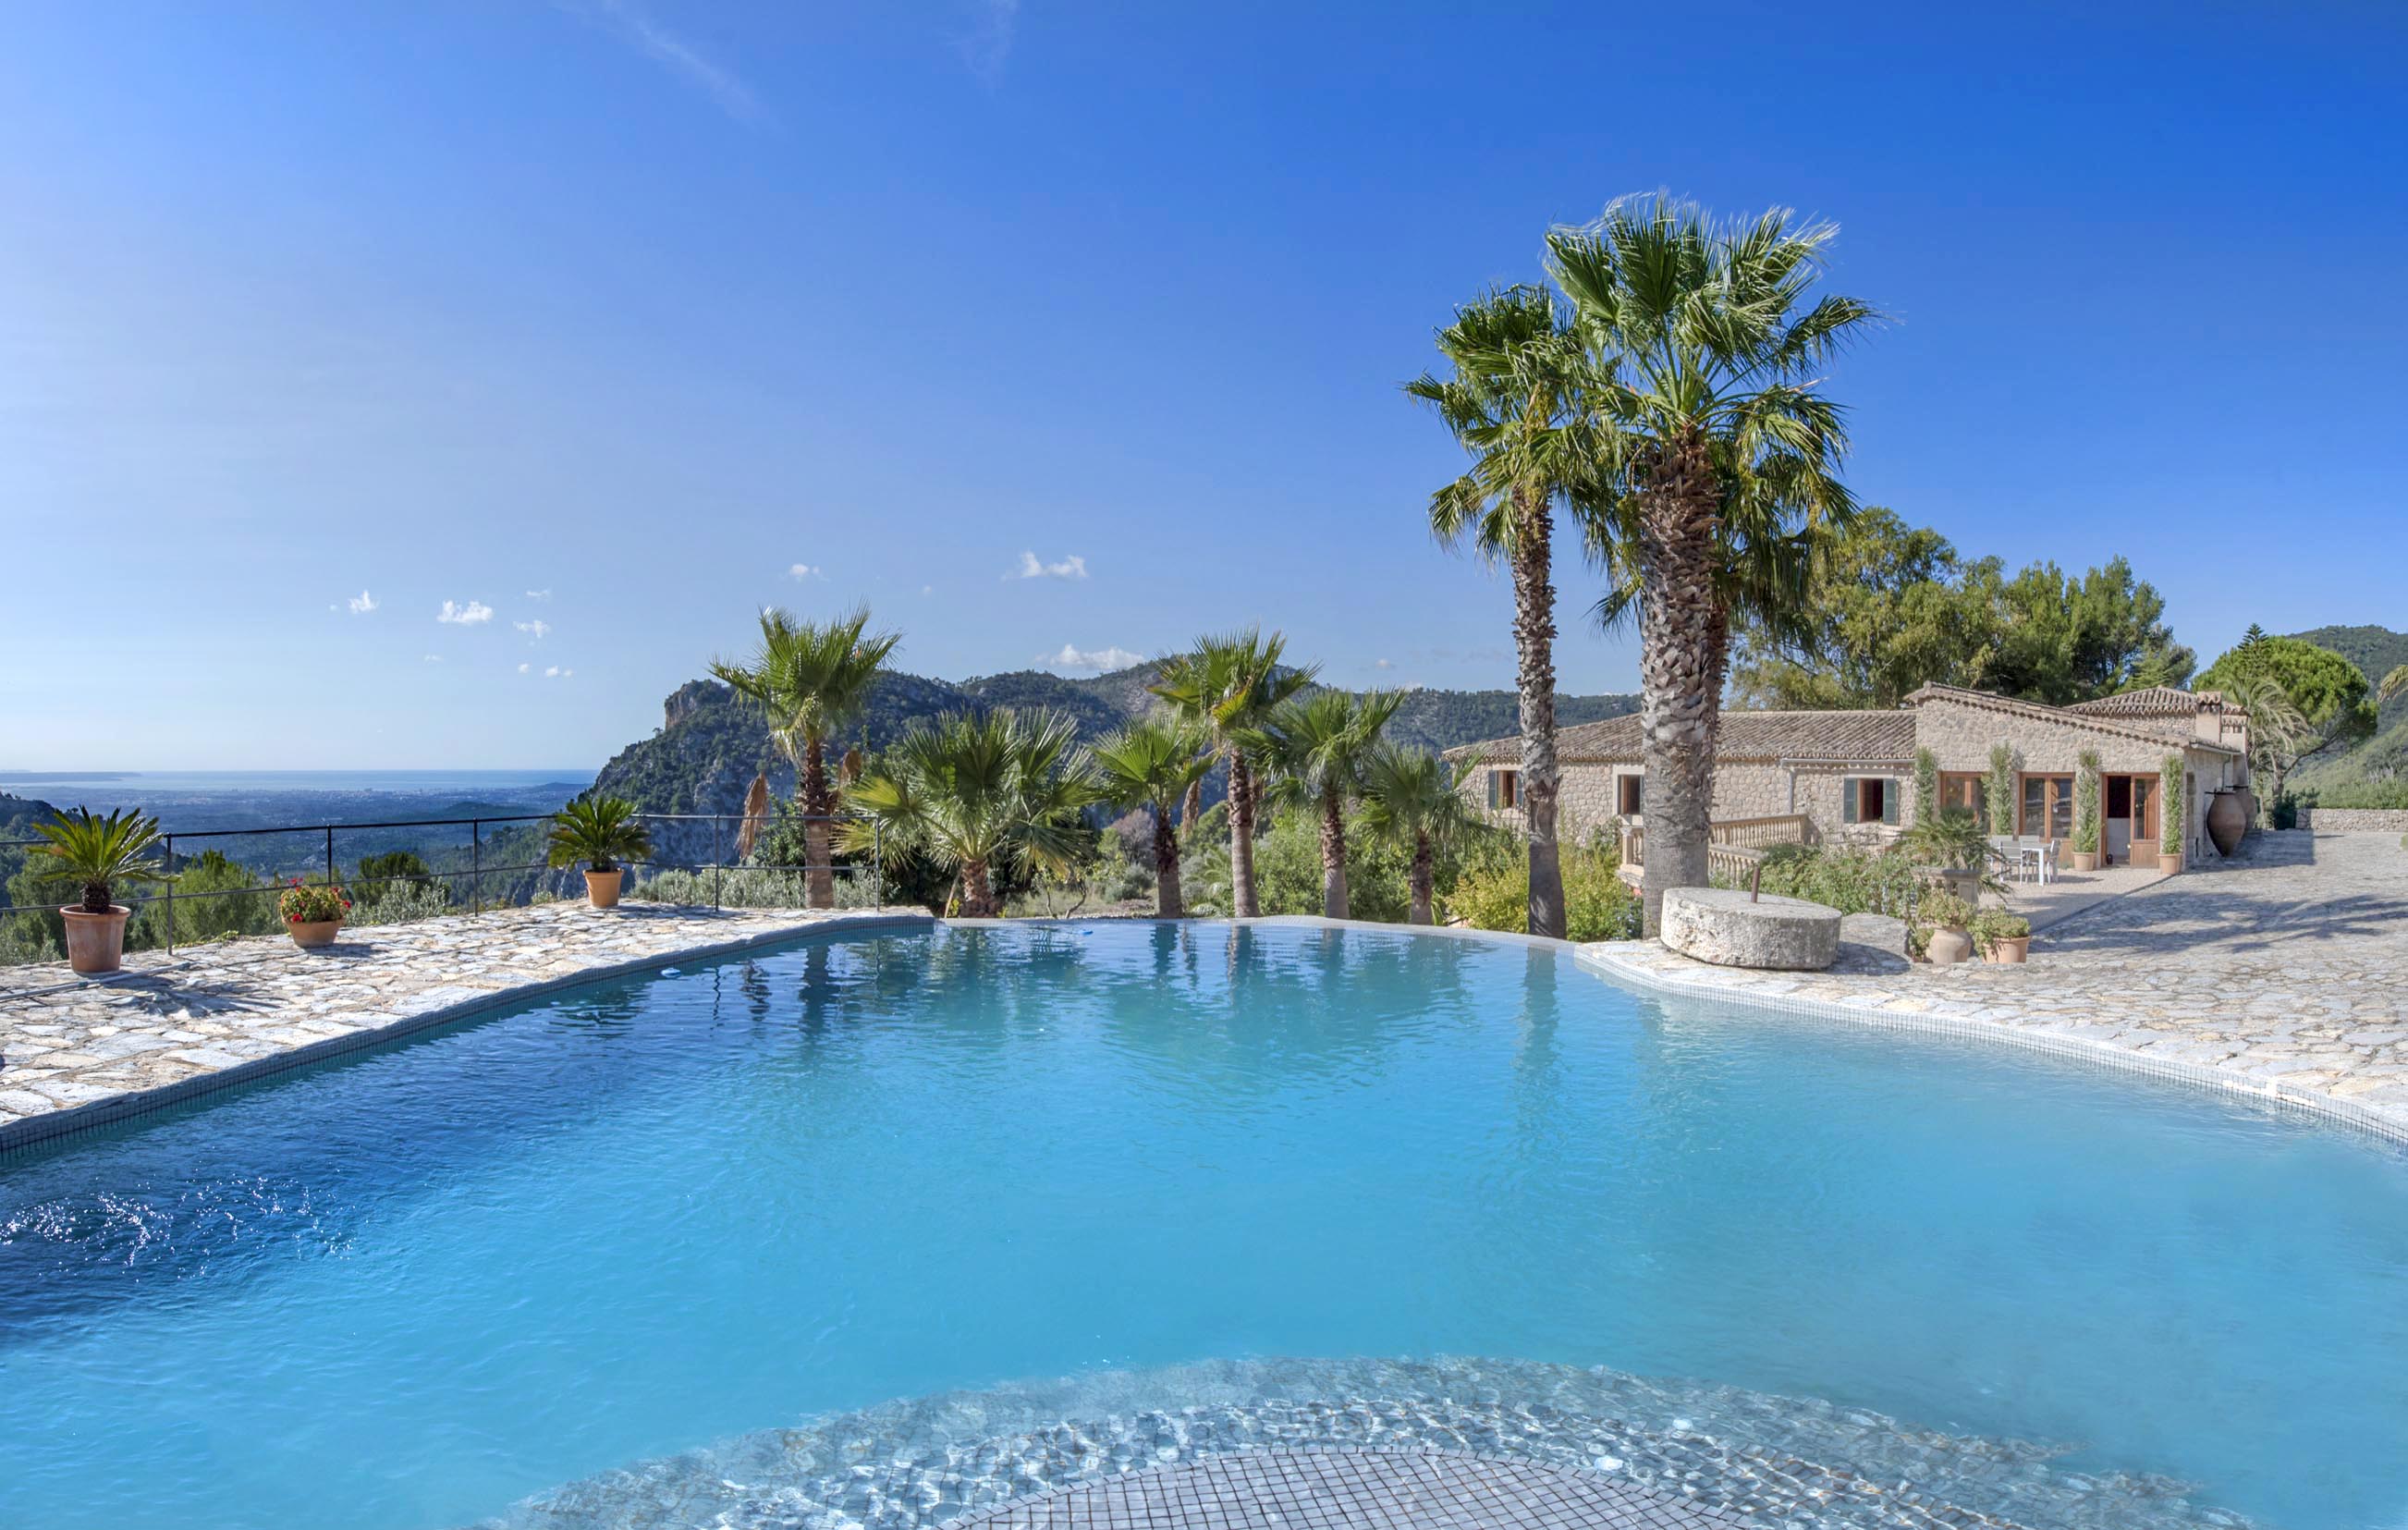 Location de vacances : propriété exclusive de luxe à Valldemossa